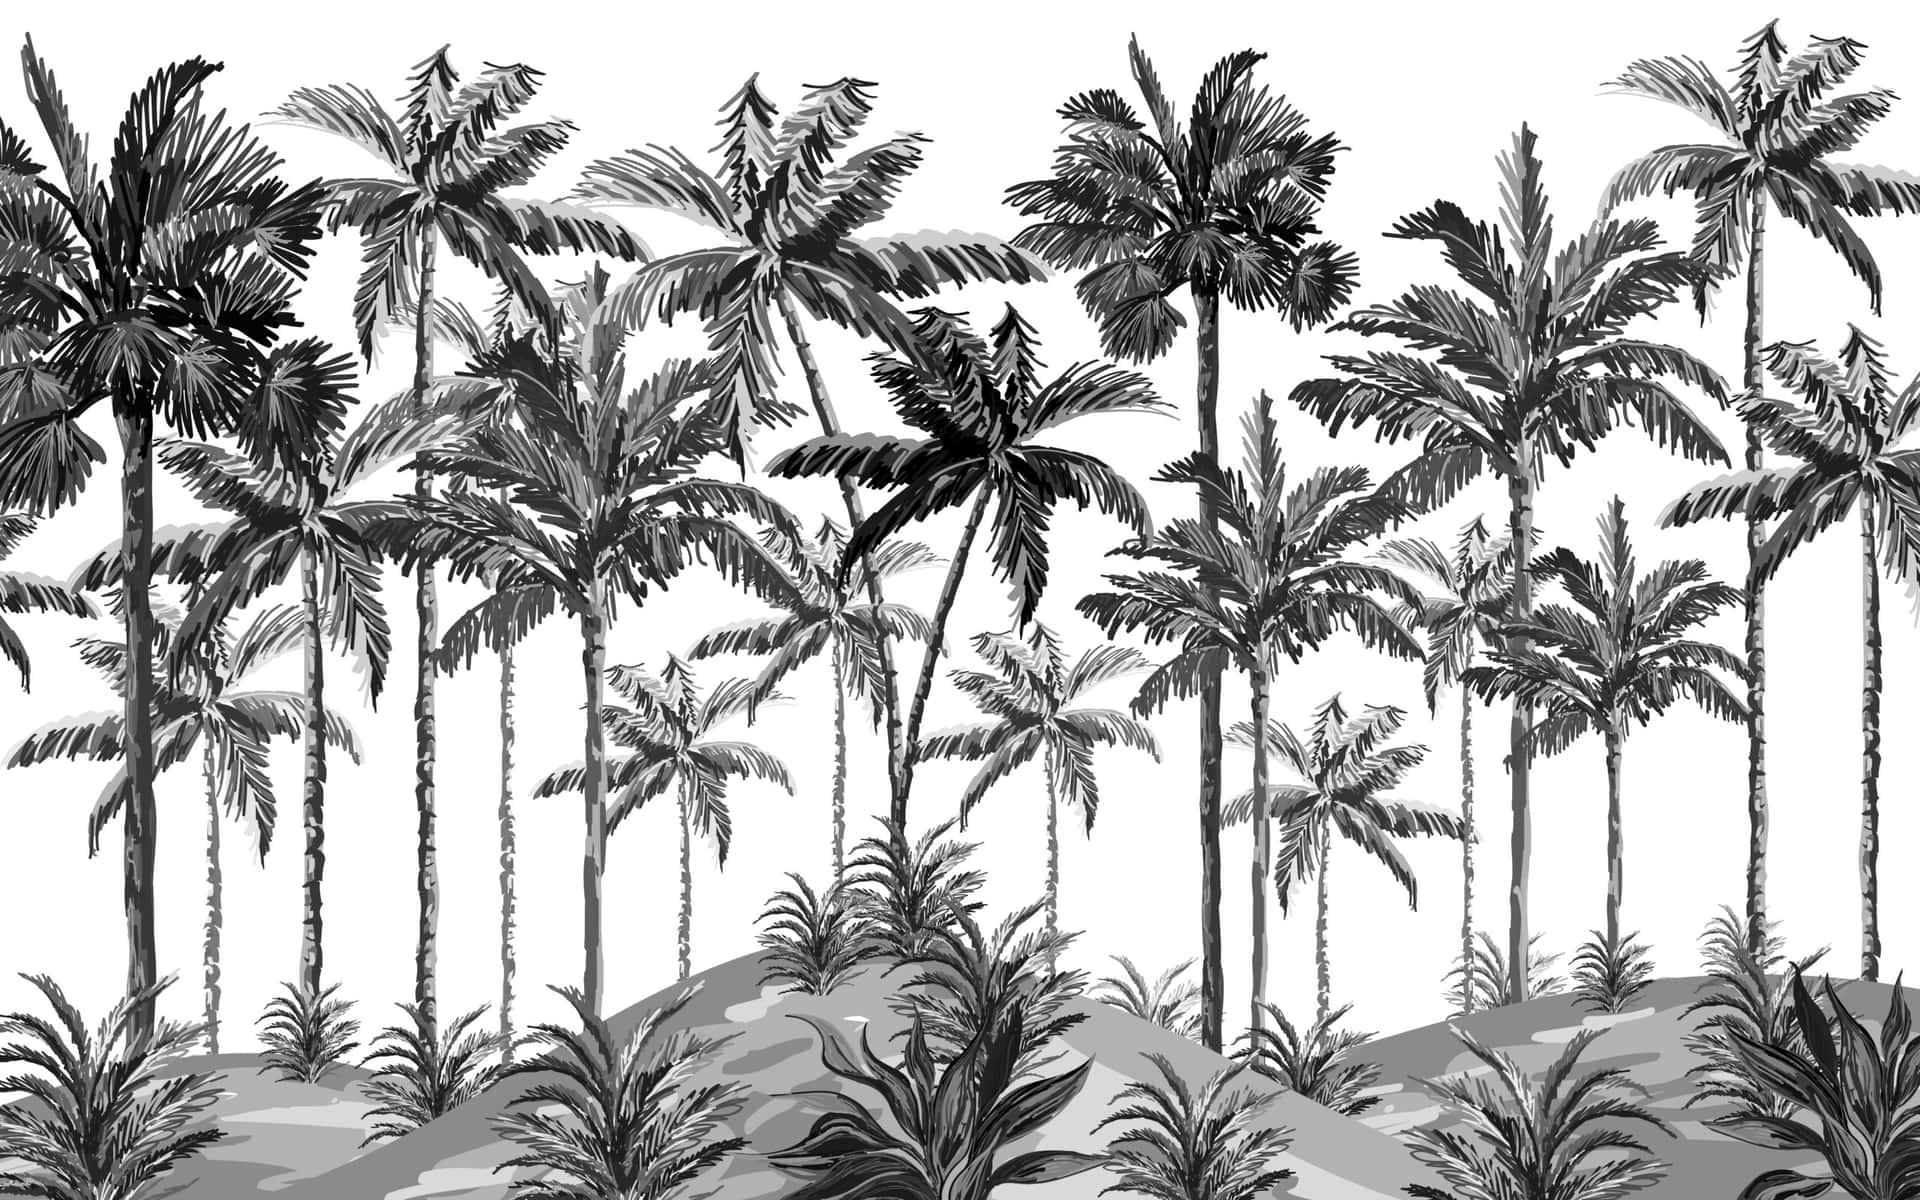 Einkrasser Kontrast Zwischen Schwarz Und Weiß Wirft Eine Kühle Und Beruhigende Palmenbaum-silhouette. Wallpaper